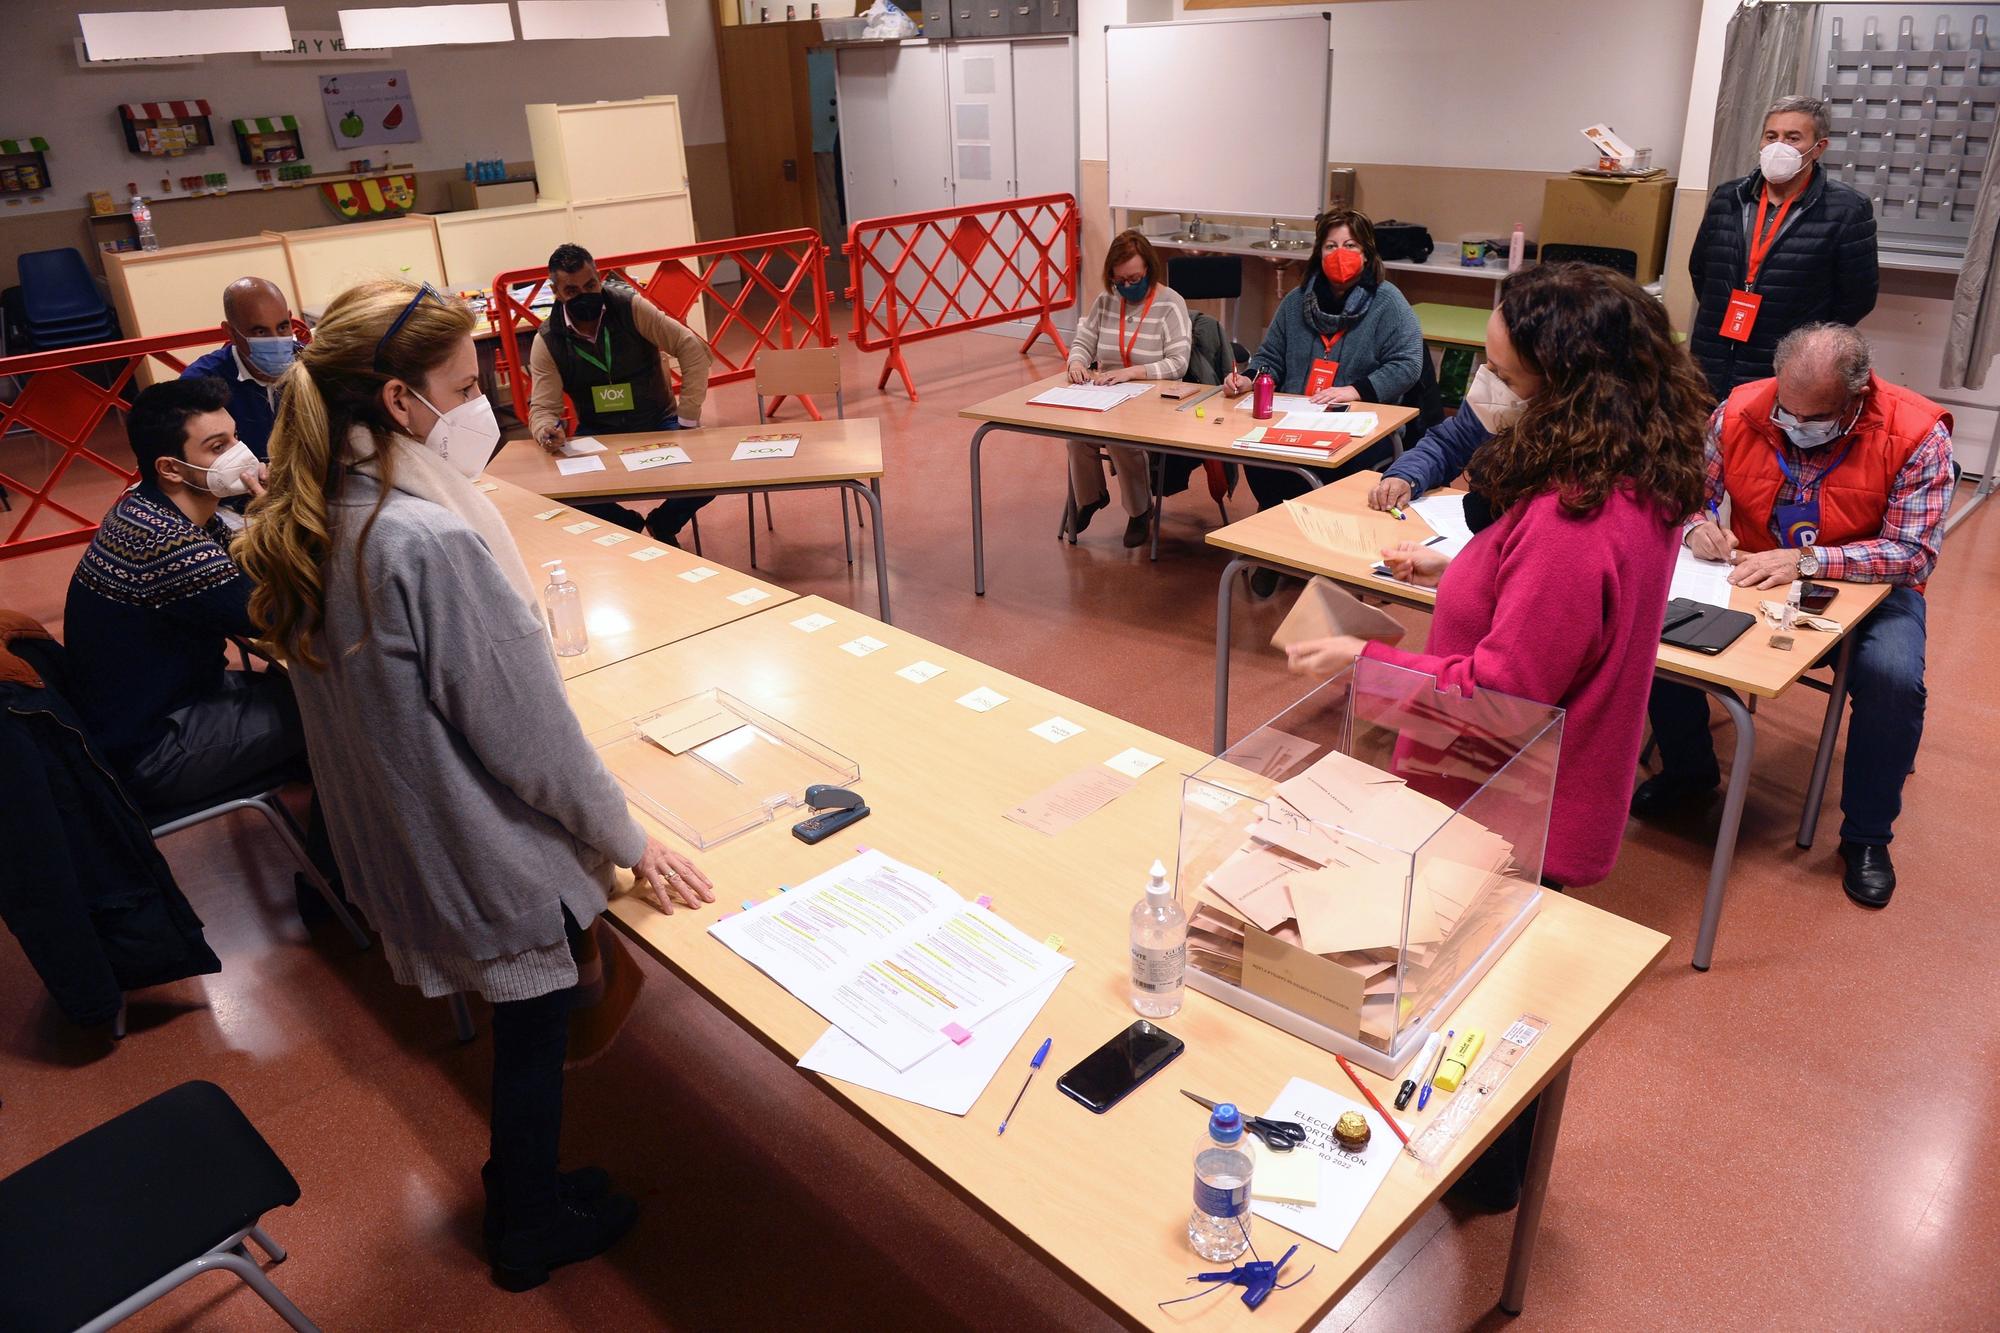 Miembros de la mesa de un colegio electoral de Valladolid realizan el recuento de votos tras las elecciones celebradas en Castilla y León, el pasado mes de febrero.